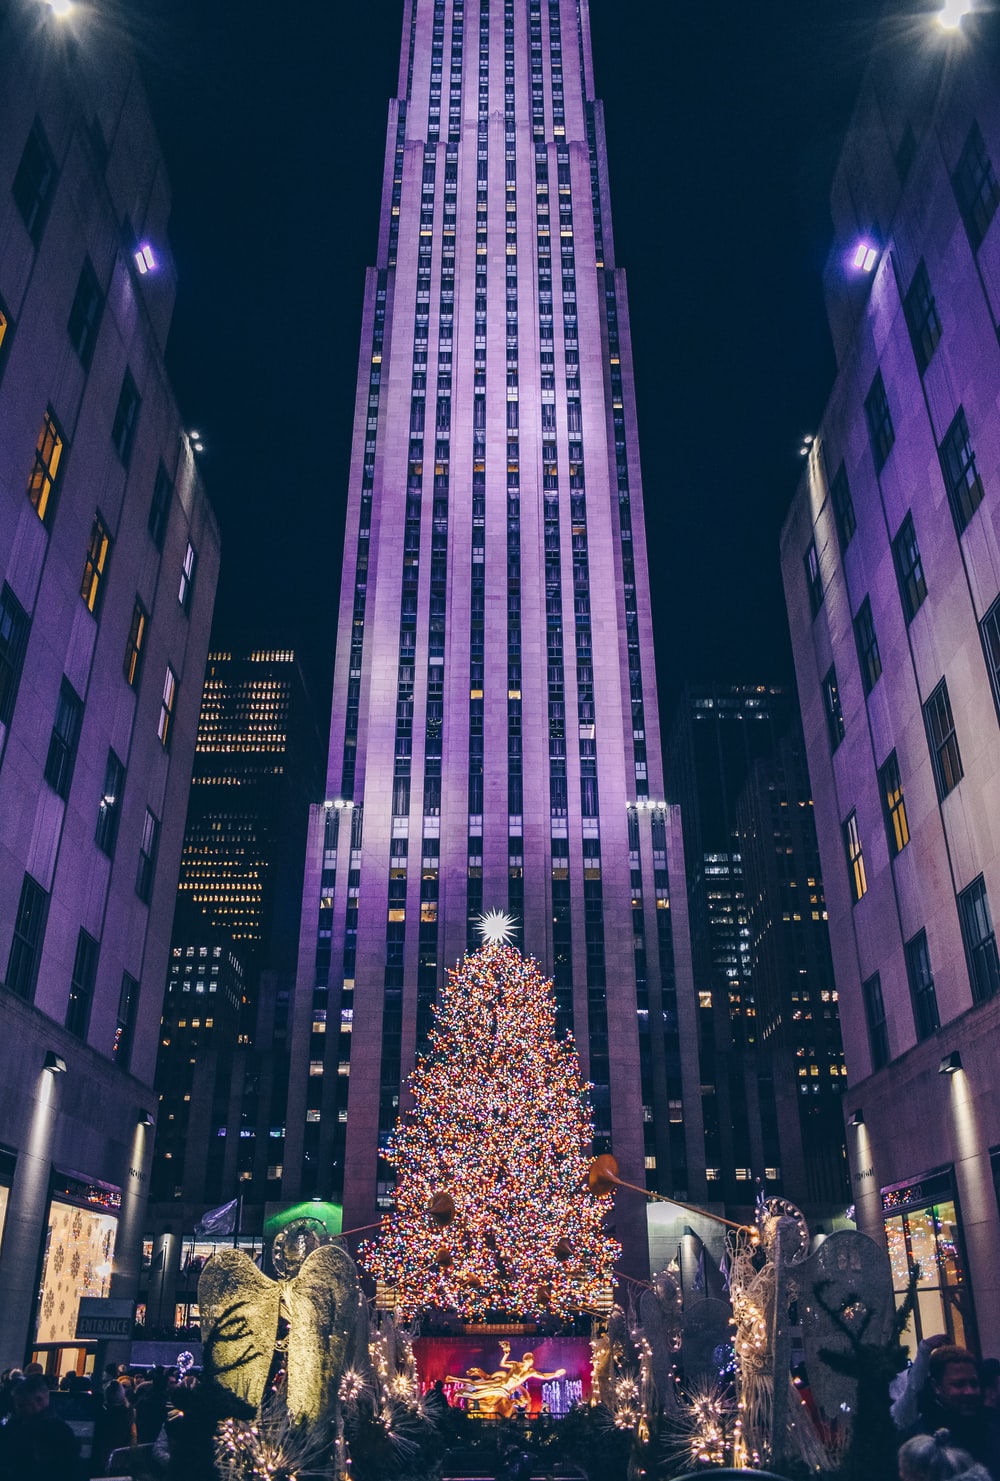 Chúc mừng Giáng sinh với bộ sưu tập ảnh nền Giáng sinh NYC đẹp lung linh! Cùng nhìn ngắm những bức ảnh phong phú, đầy màu sắc để cảm nhận không khí lễ hội đang đến rất gần.